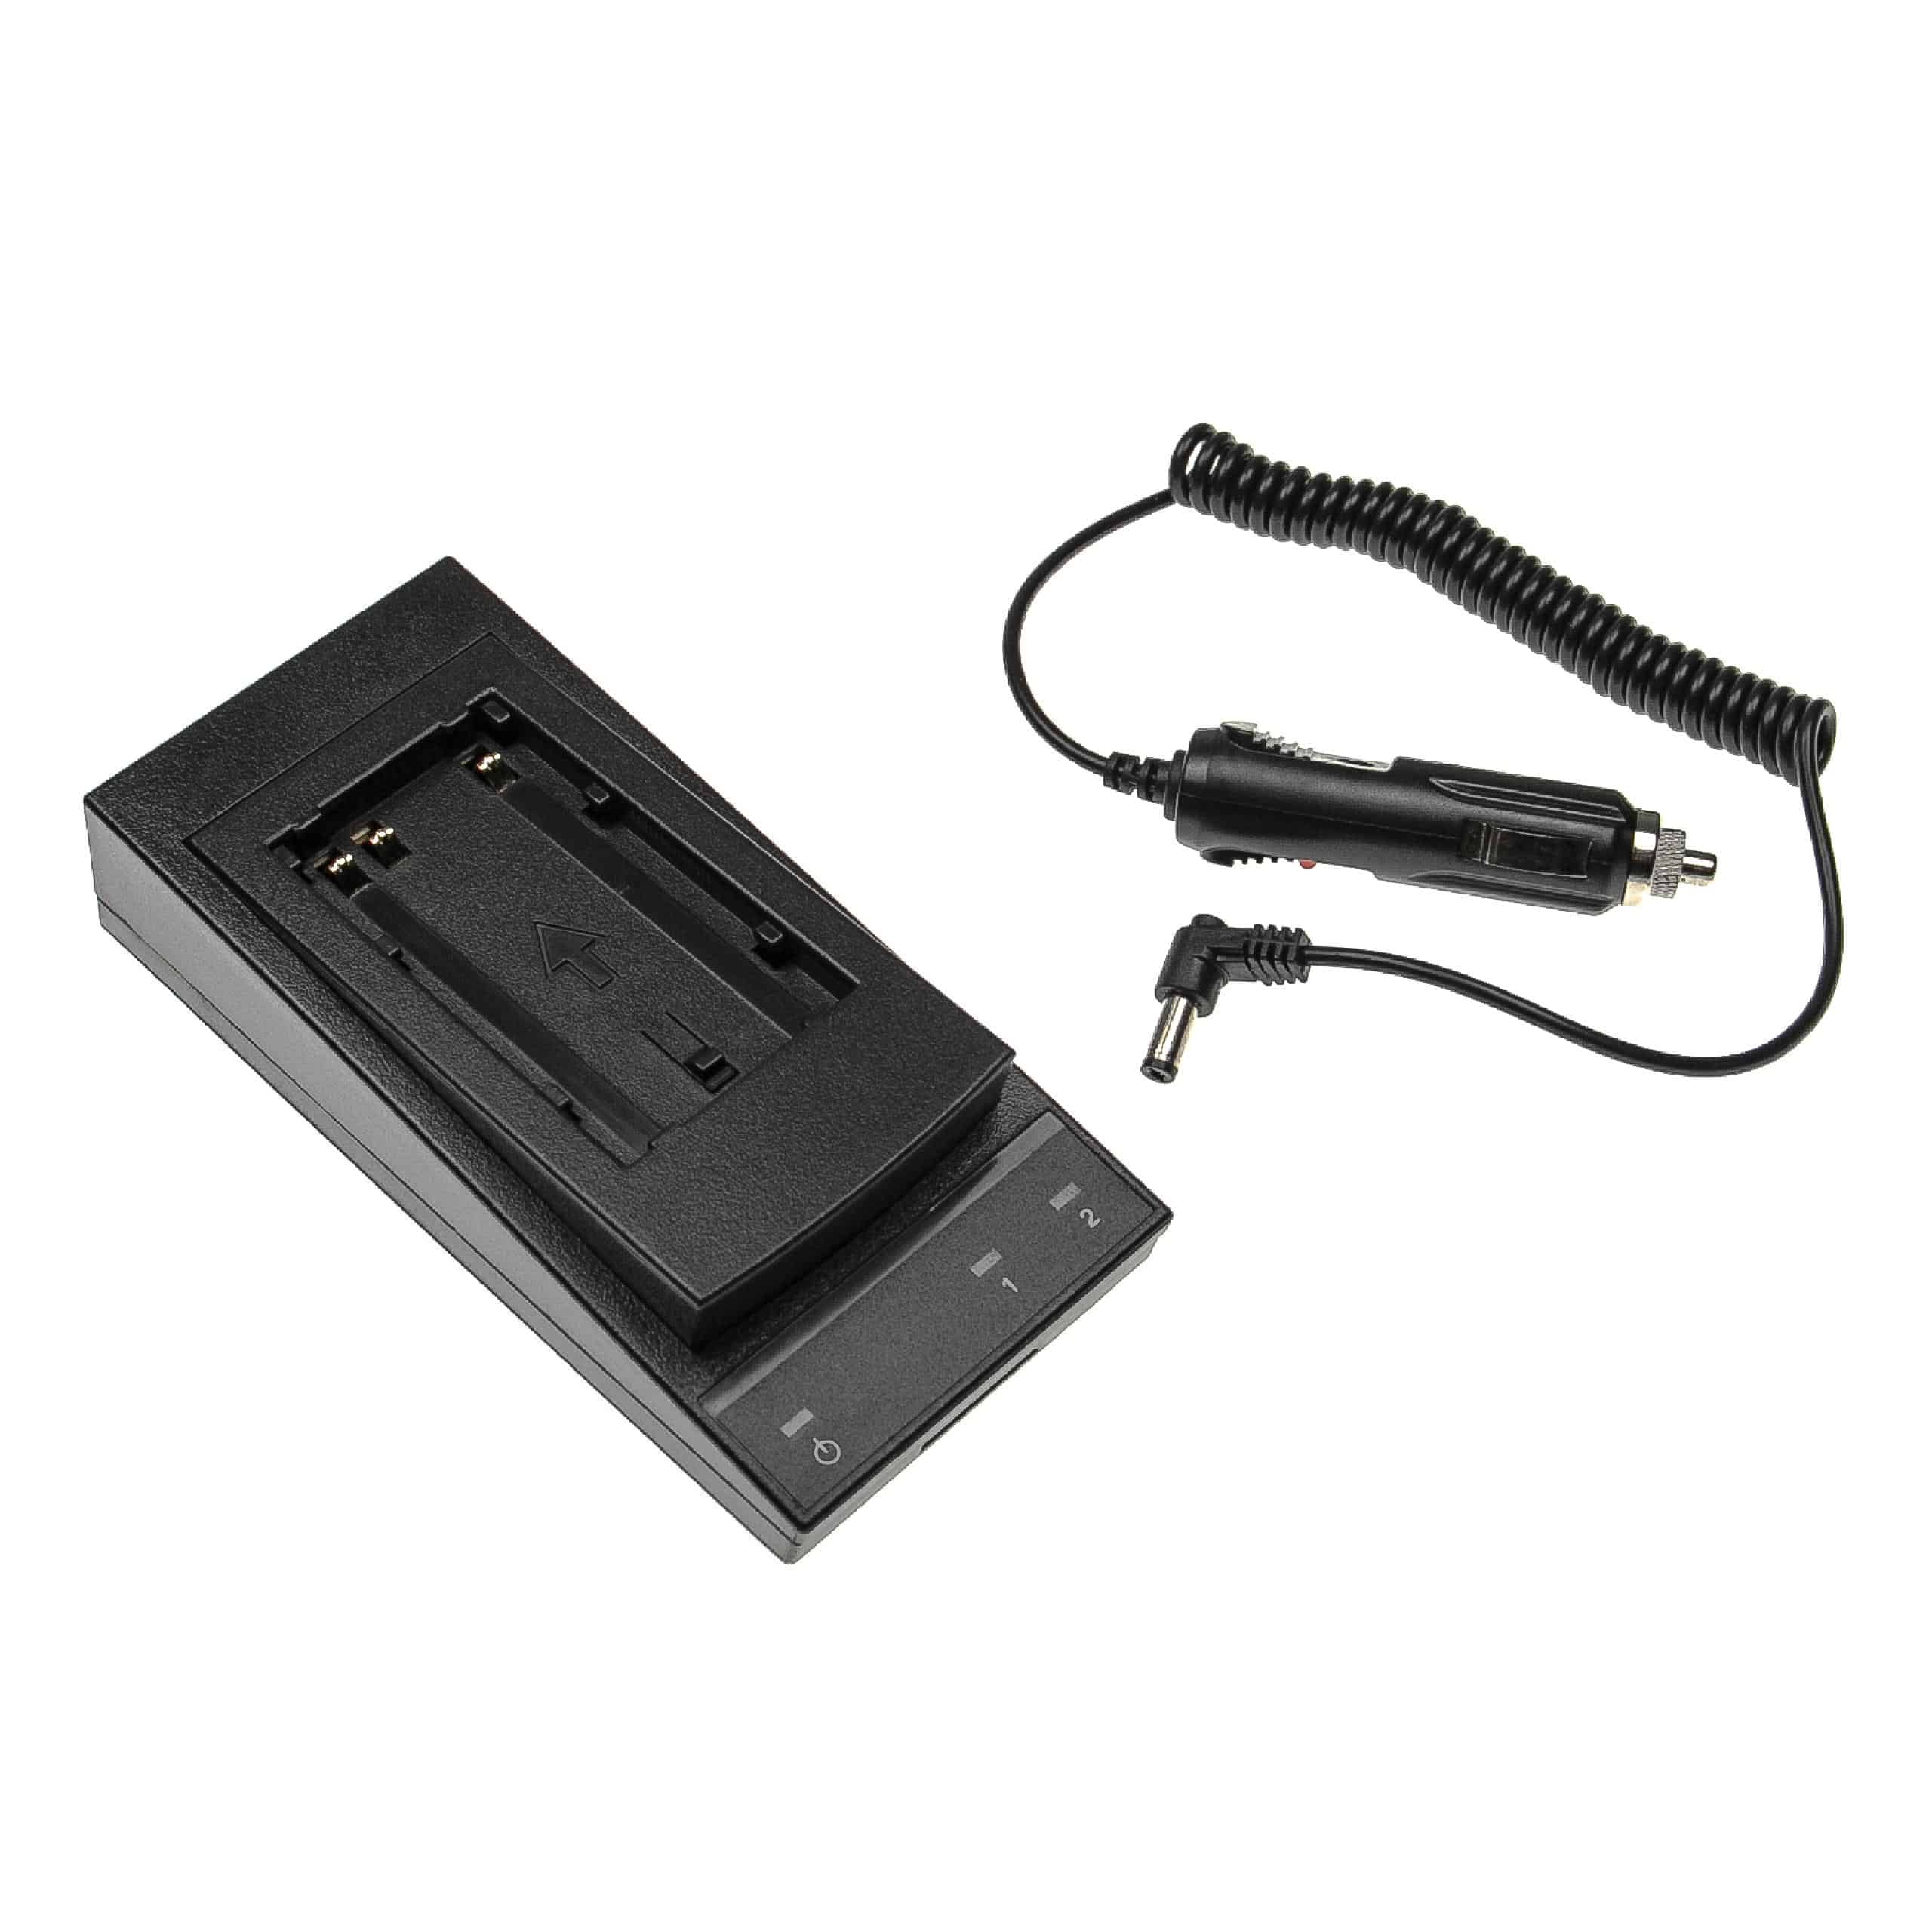 Cargador medidor / batería Leica - Carcasa + cable coche, 7,5 V / 1,5 A